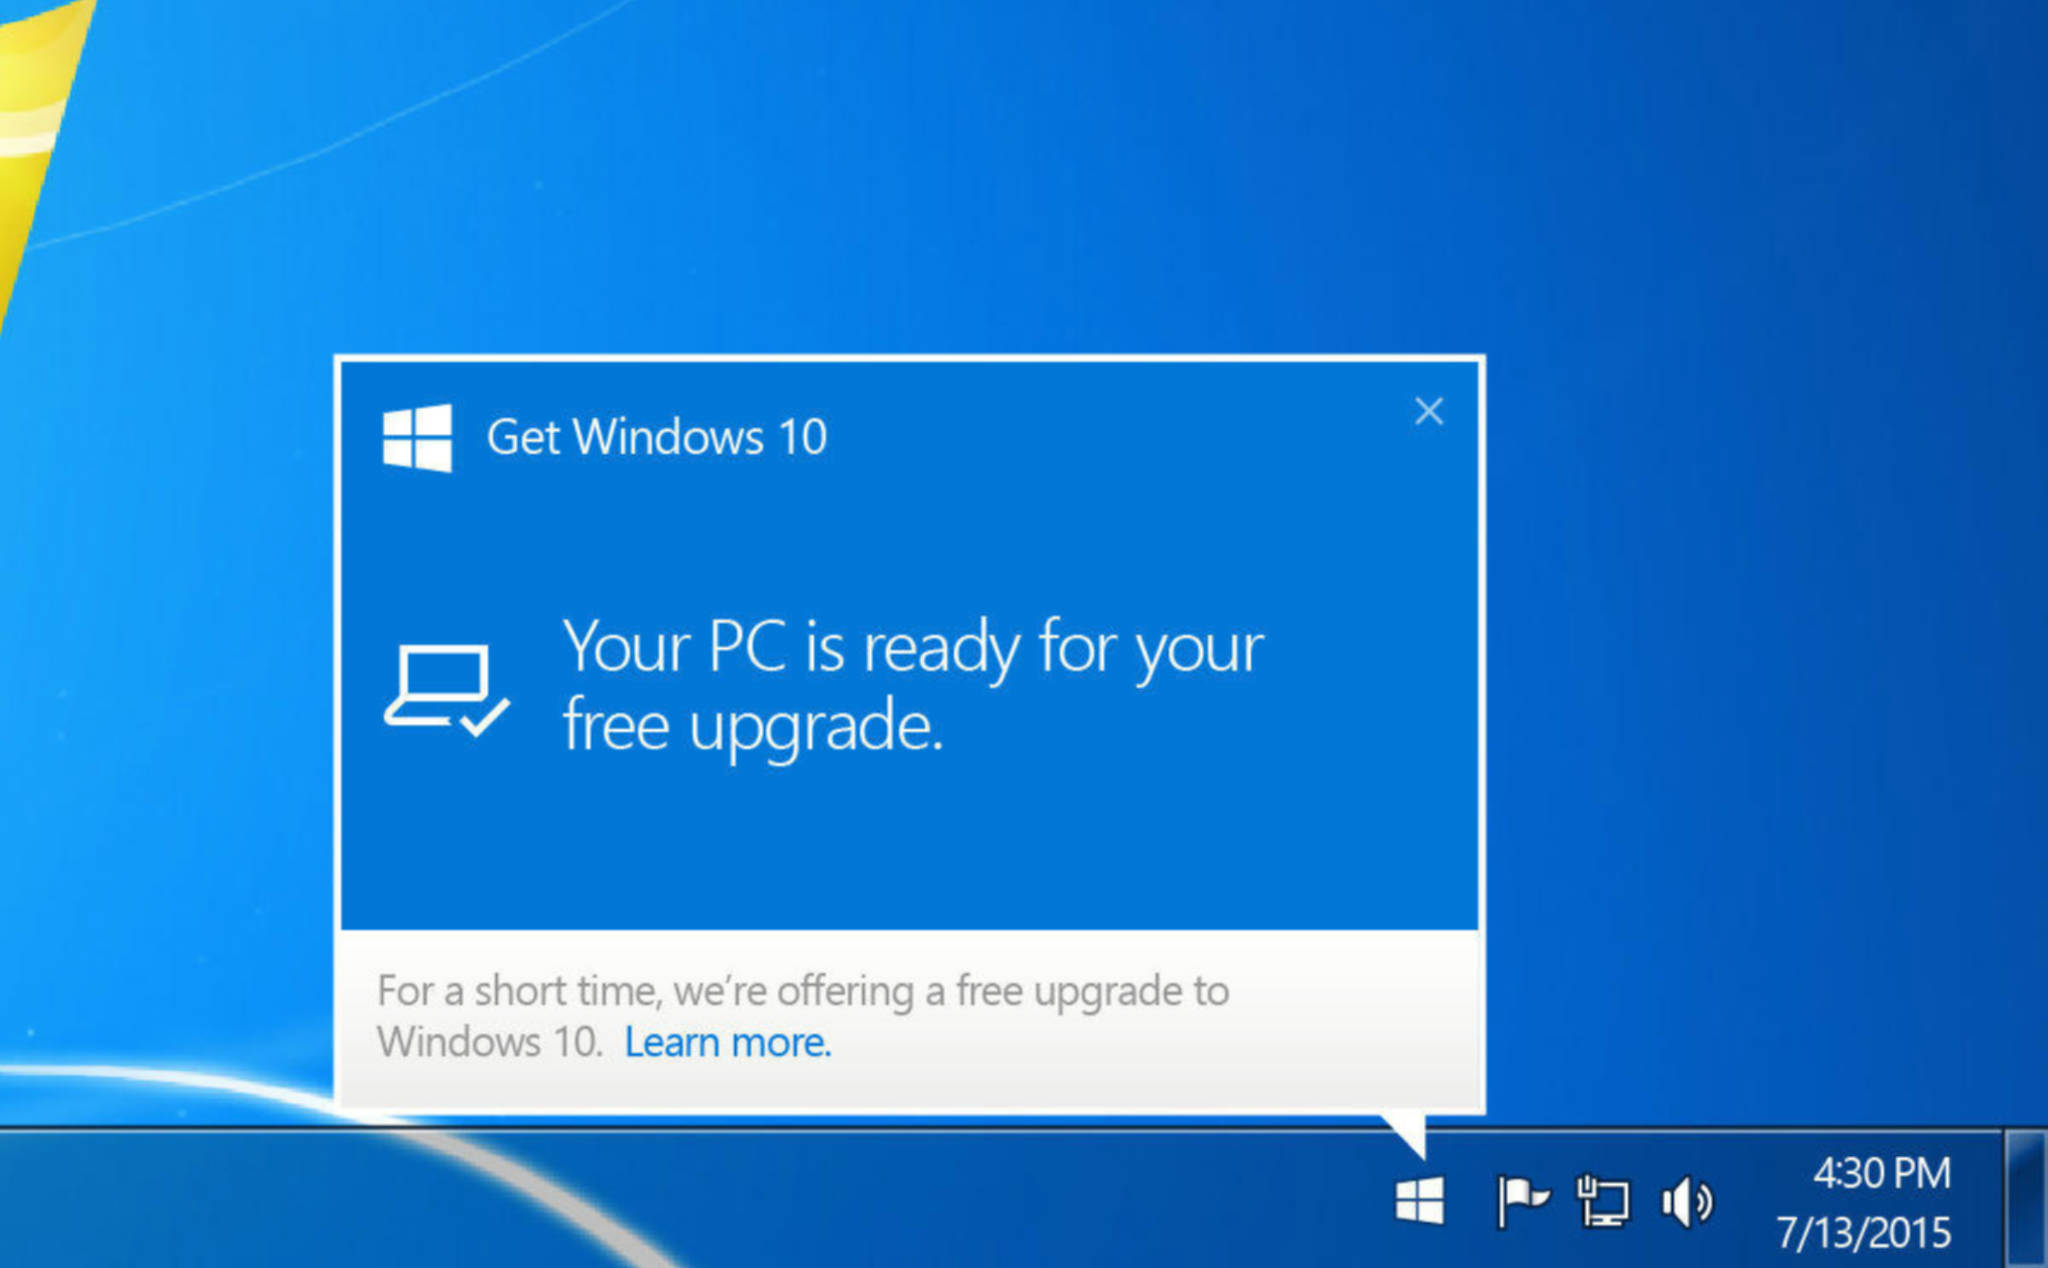 Anh em đang xài Windows 7/8/8.1 bản quyền vẫn có thể nâng cấp Windows 10 miễn phí nhé!